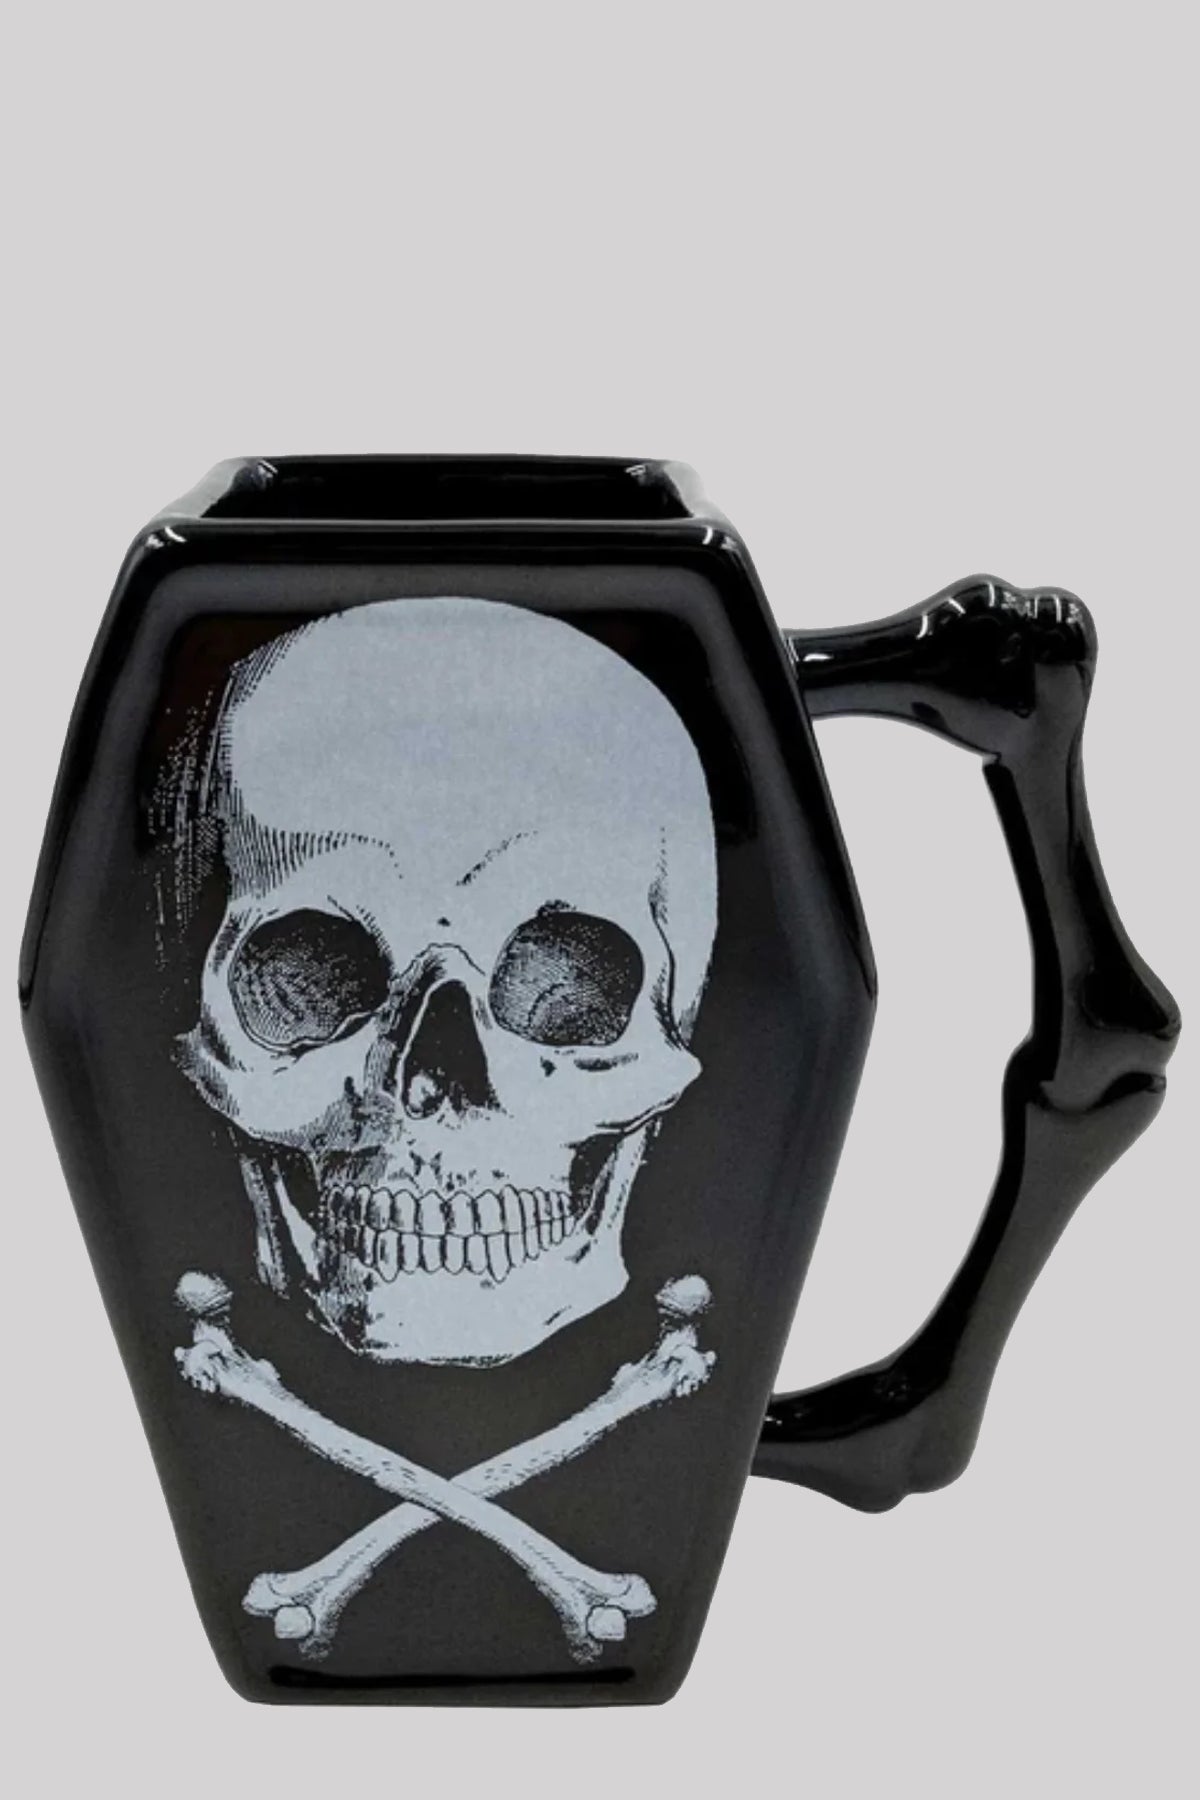 Kreepsville 666 Skull And Crossbones Goth Coffin Shaped Mug